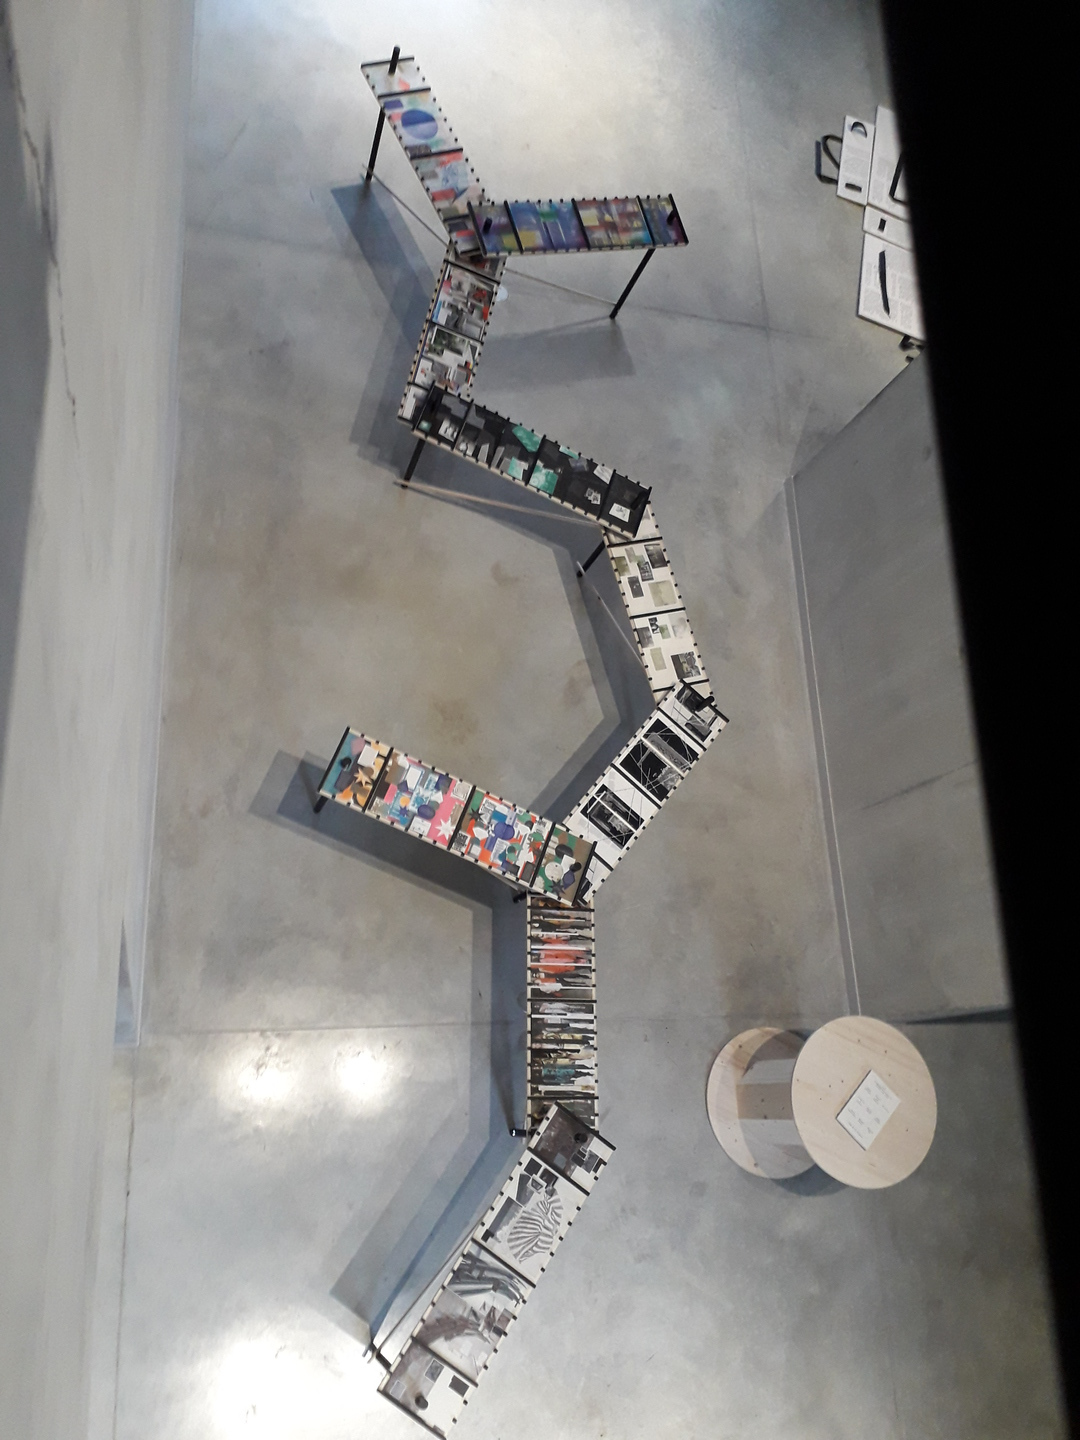 Vue de dessus d'une installation de tables sur lesquelles sont exposées de nombreux ouvrages